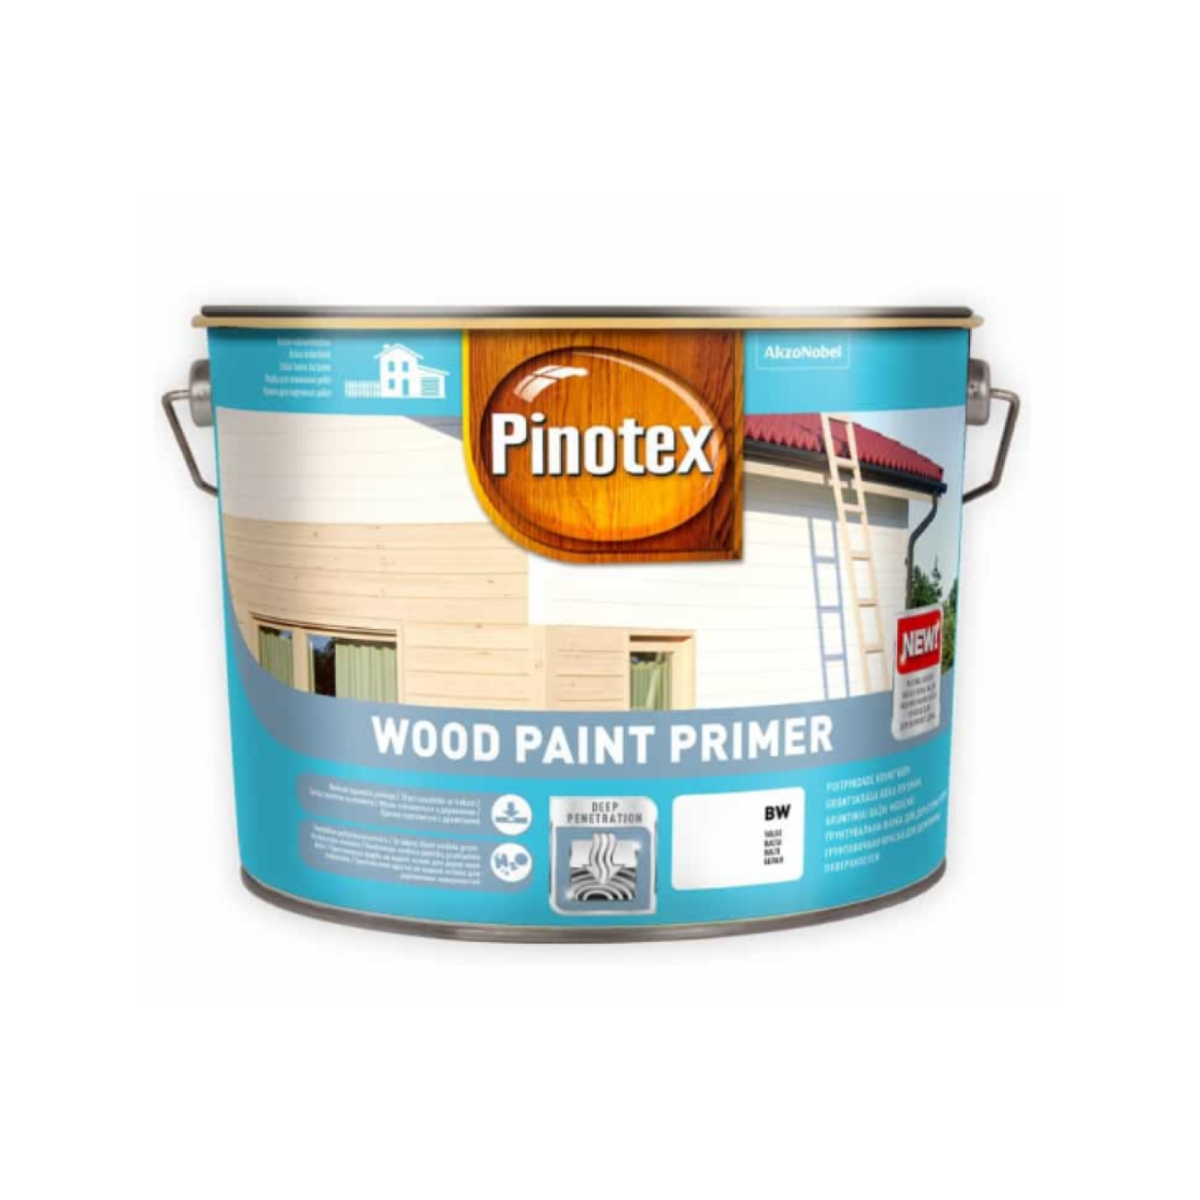 Pinotex Wood Paint Primer Ūdens bāzes gruntskrāsa koka virsmām, matēta, balta 2.5L